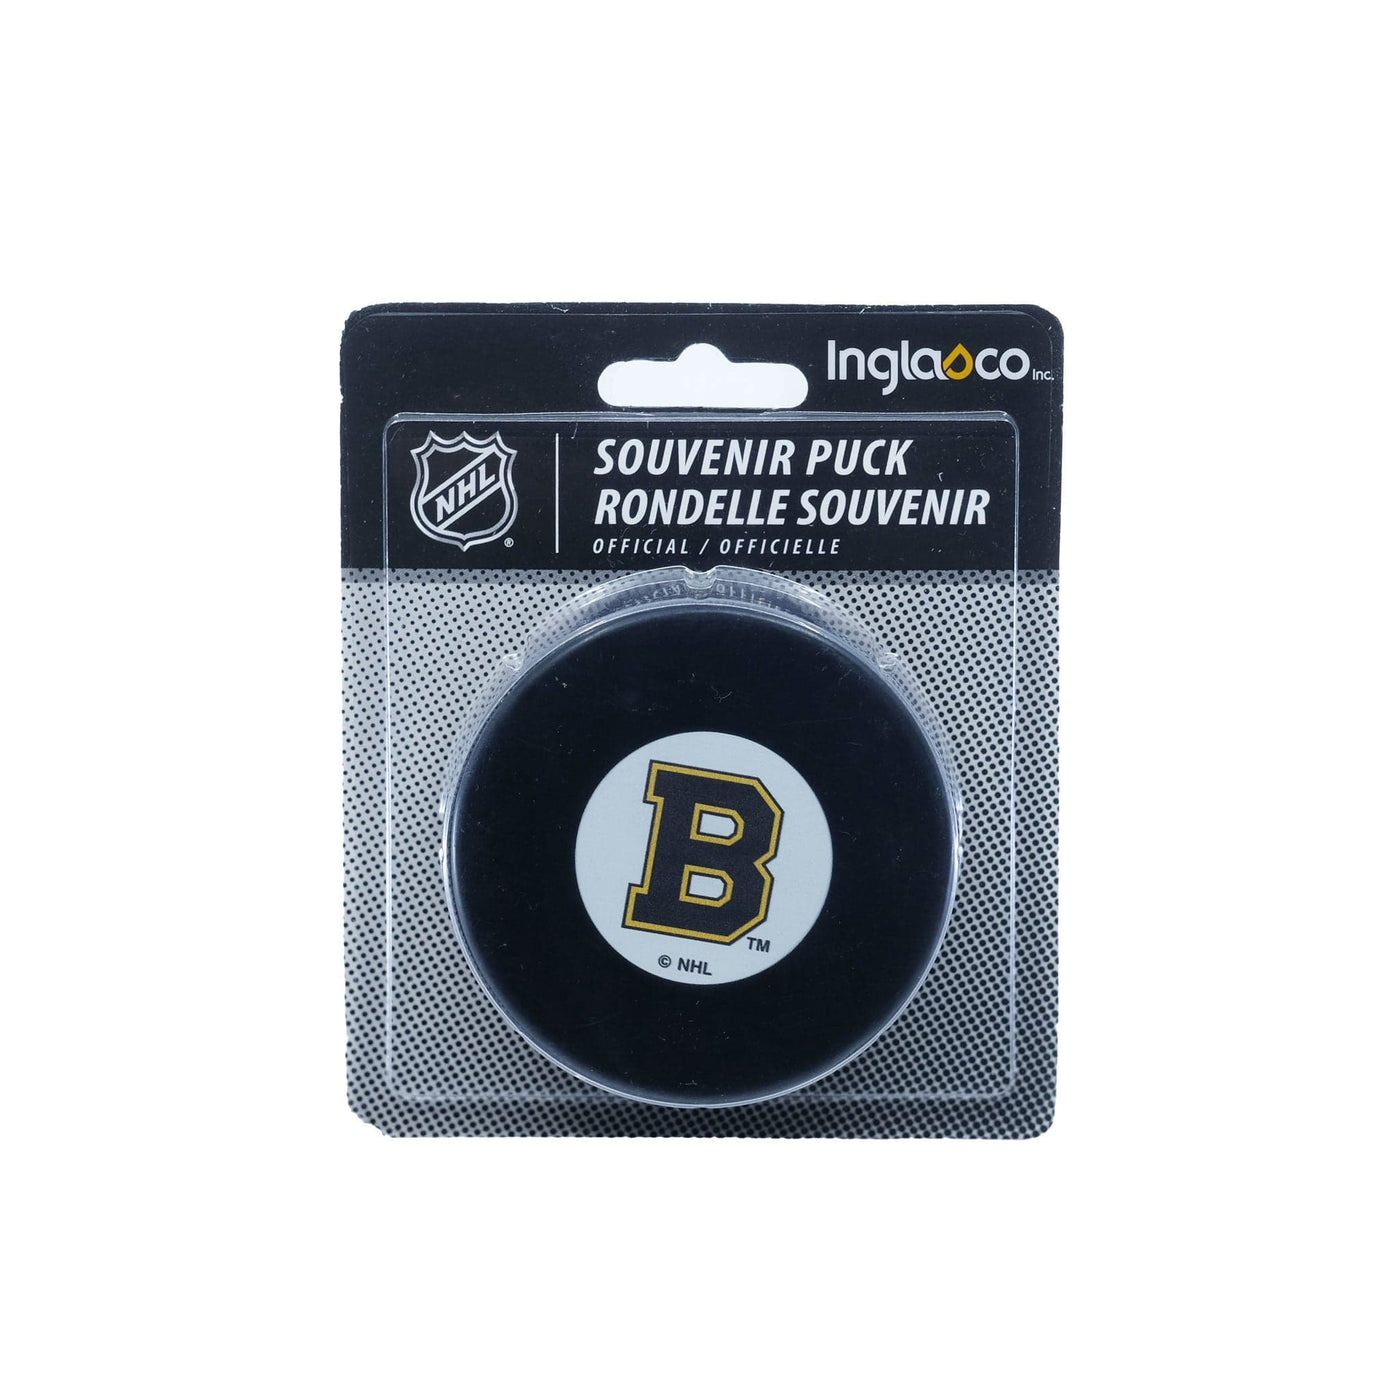 Boston Bruins - Original 6 Puck